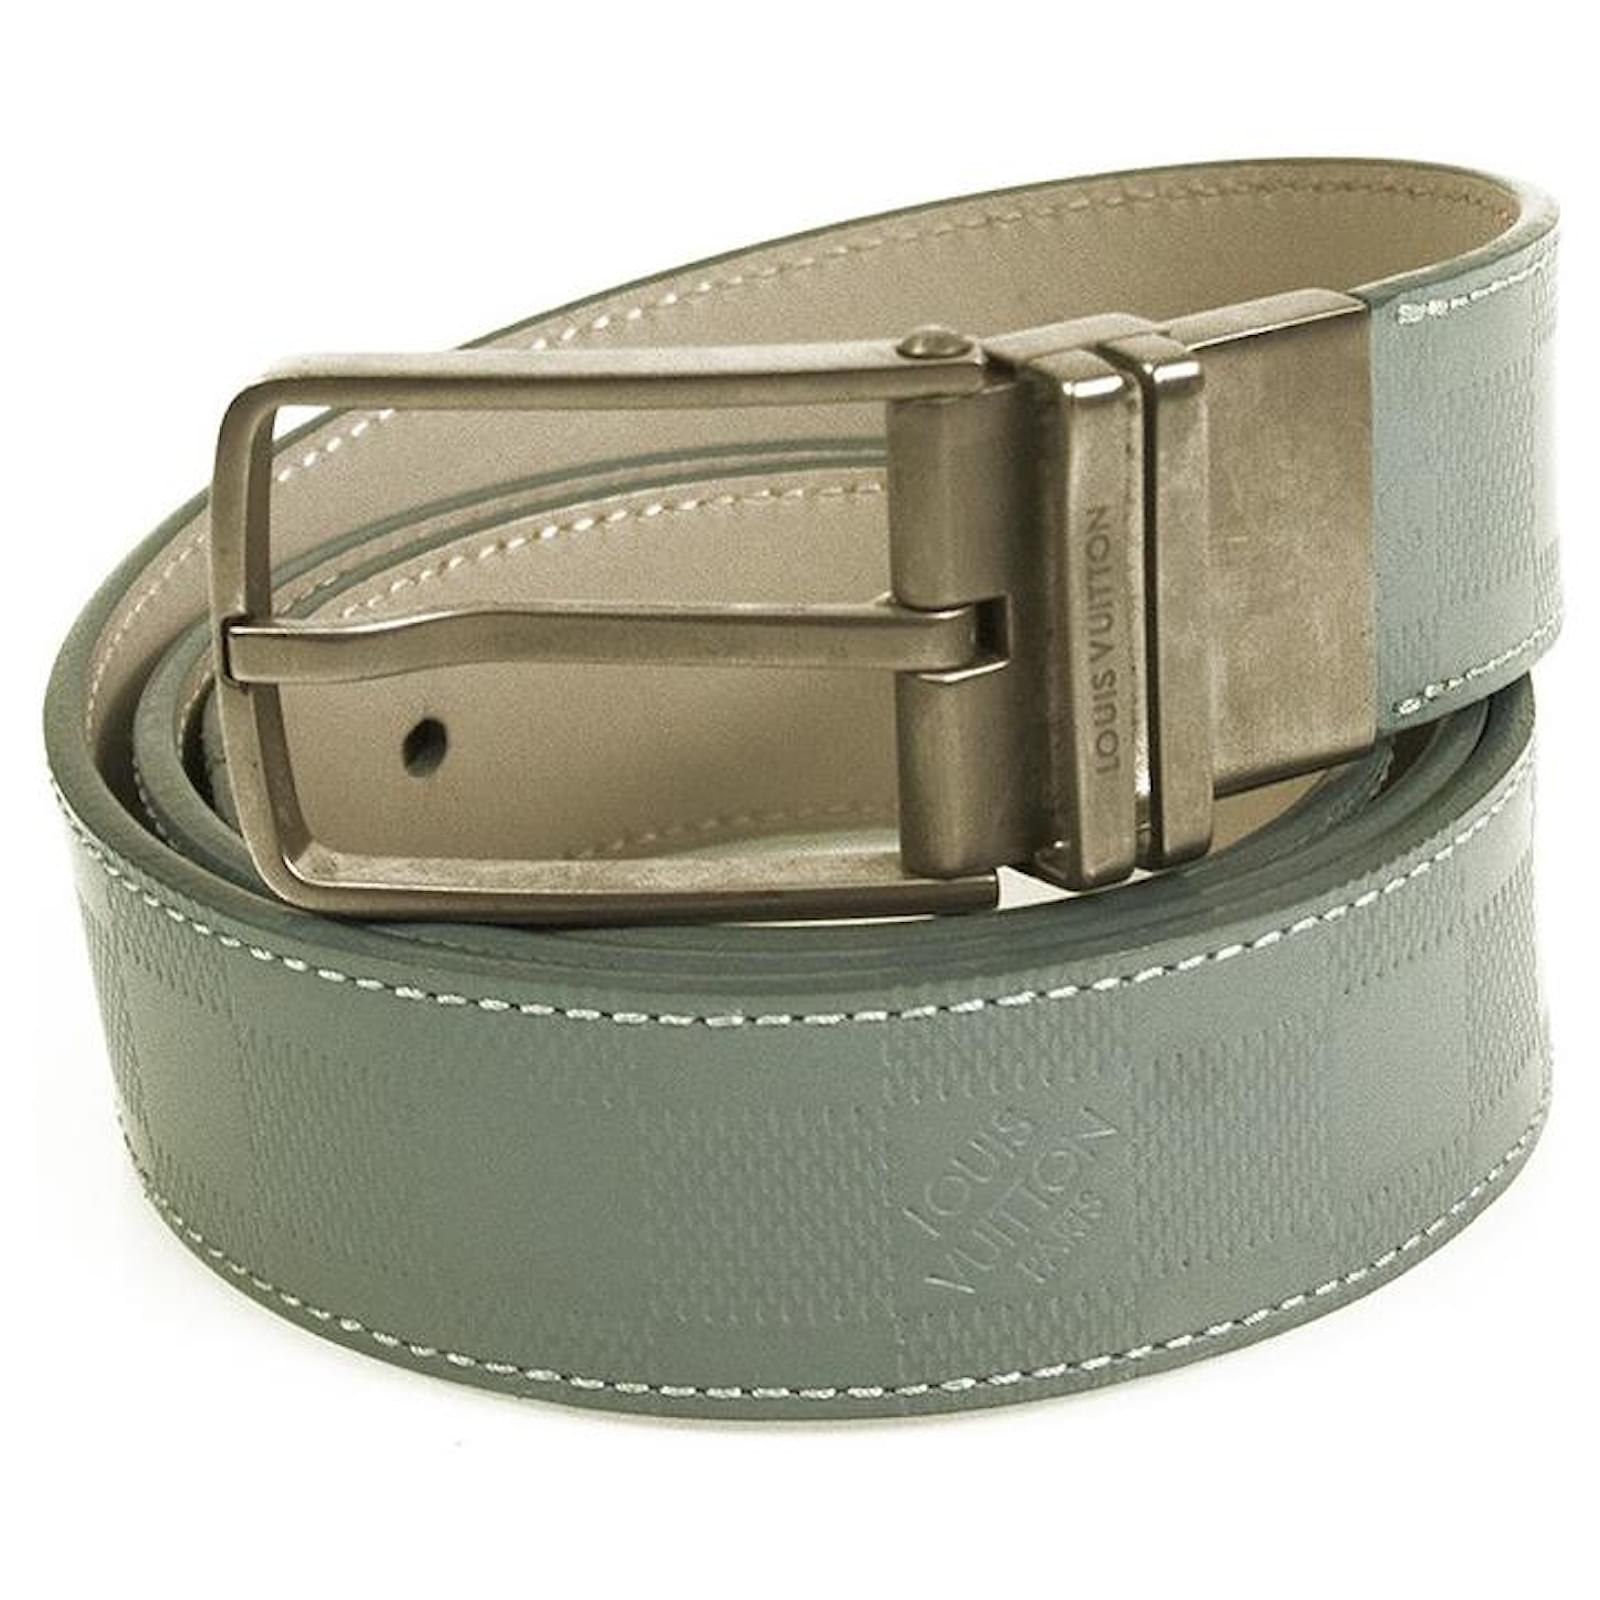 Cinturones Louis vuitton Marrón talla 100 cm de en Cuero - 33313488